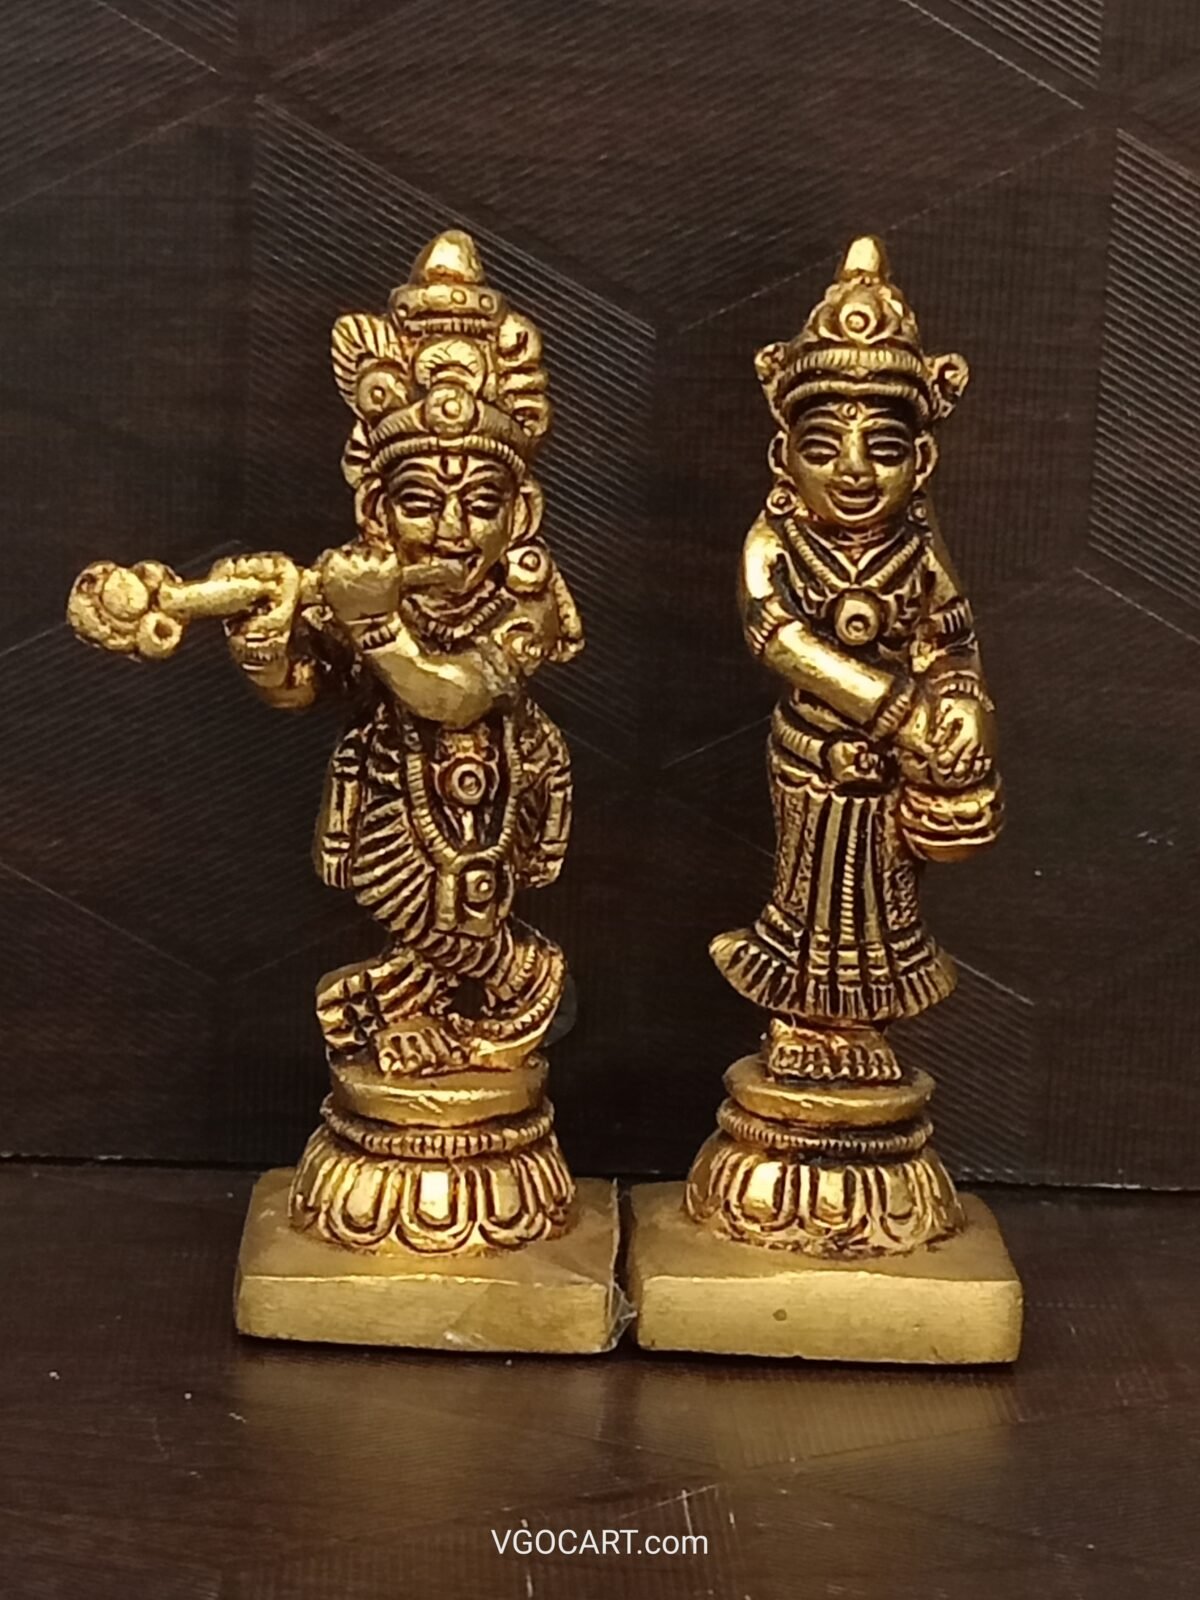 brass-radha-krishna-idol-pooja-gift-vgocart-coimbatore-india